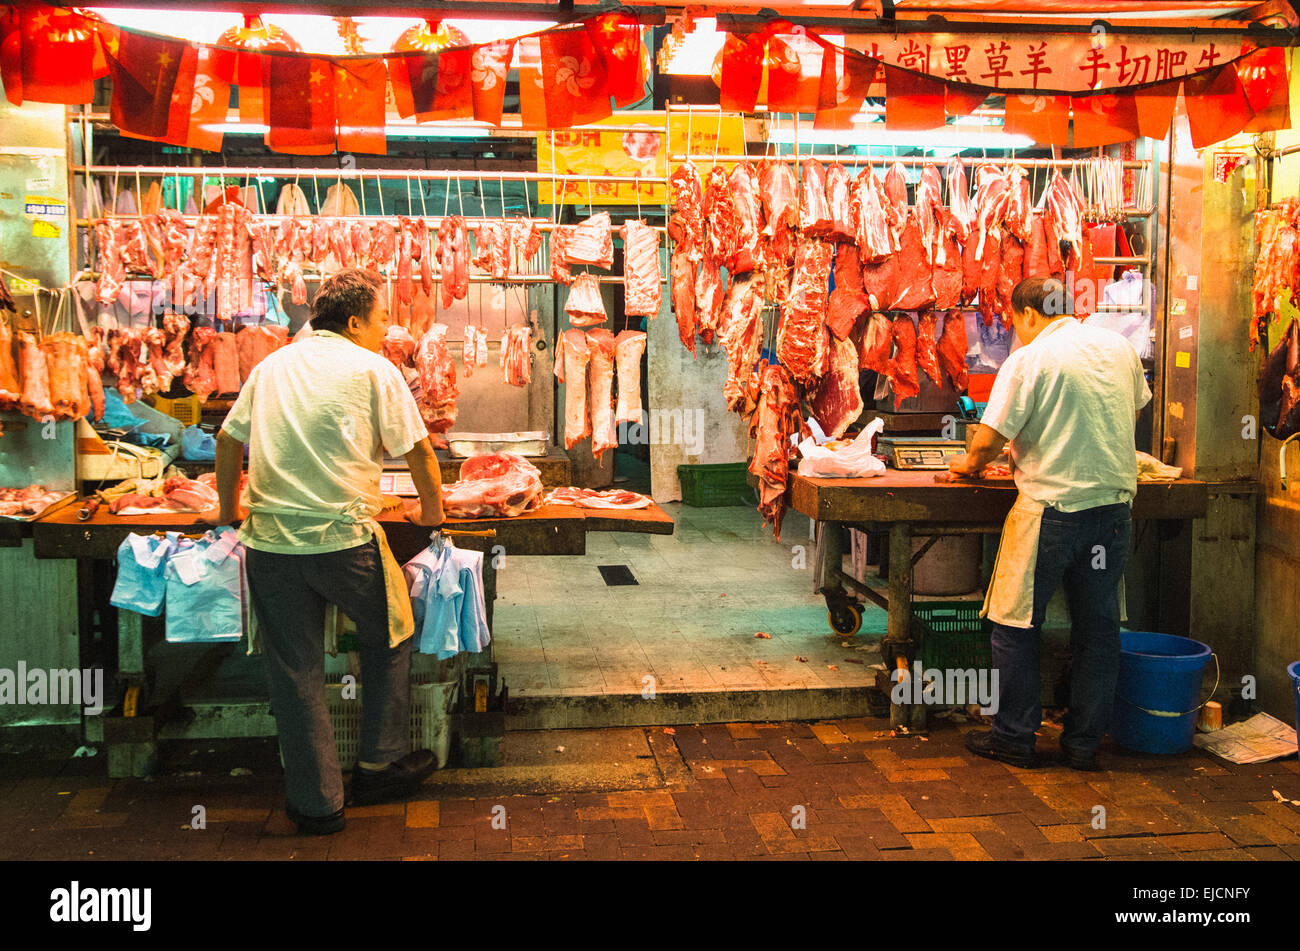 Las carnicerías en el mercado nocturno de Hong Kong Foto de stock